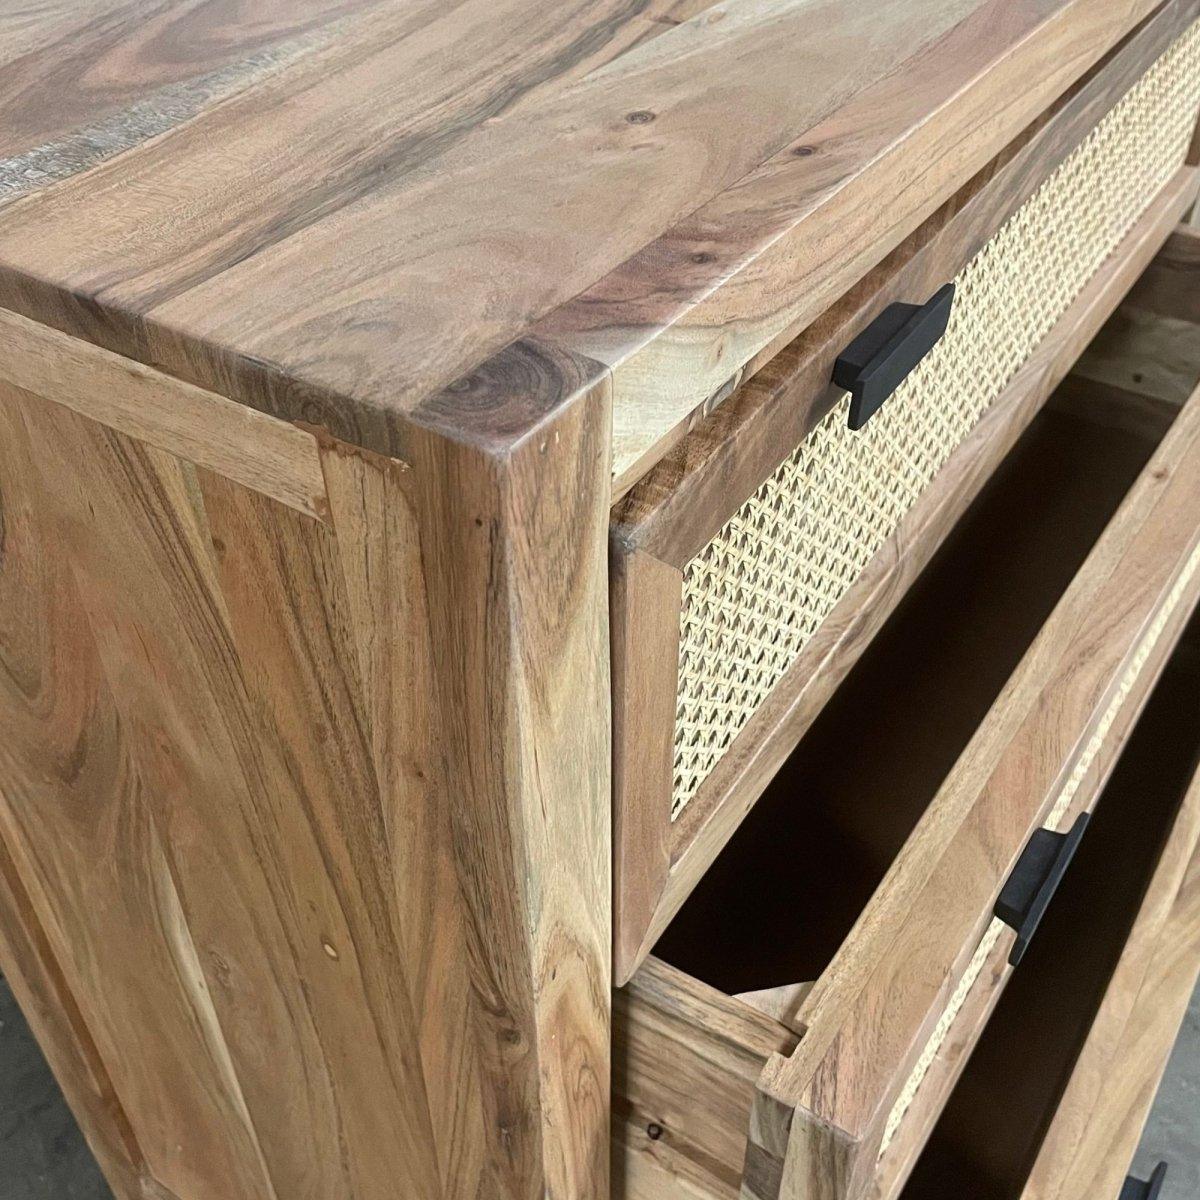 Carmen Cane 3 drawer Dresser - Rustic Furniture Outlet